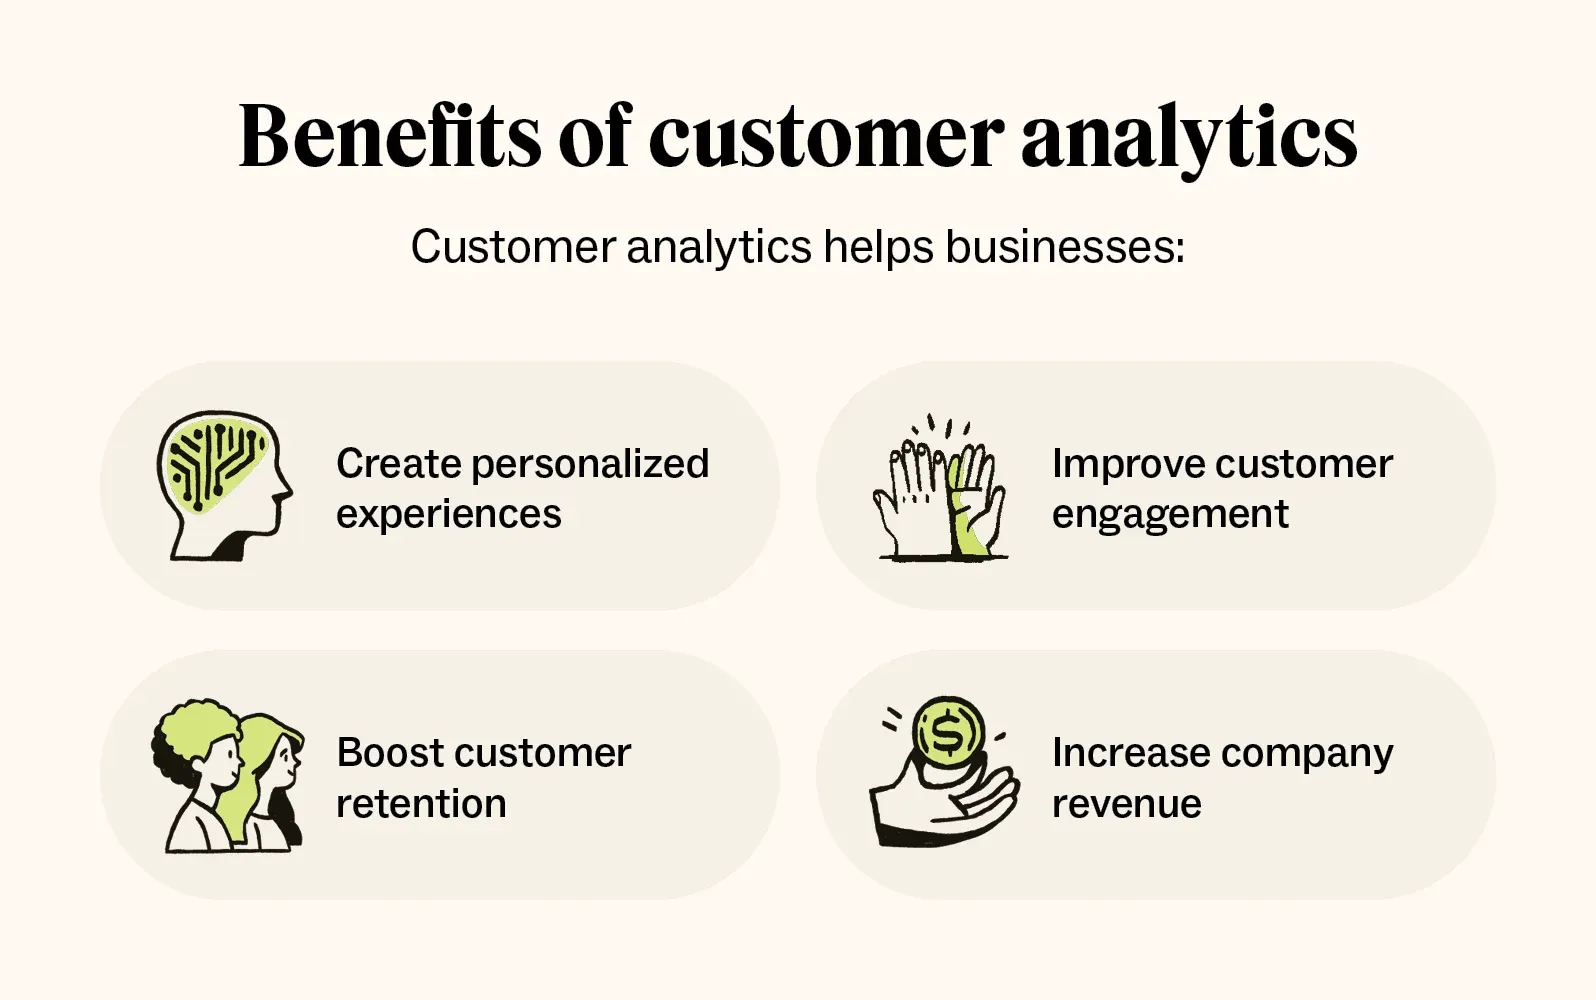 Benefits of Customer Analytics